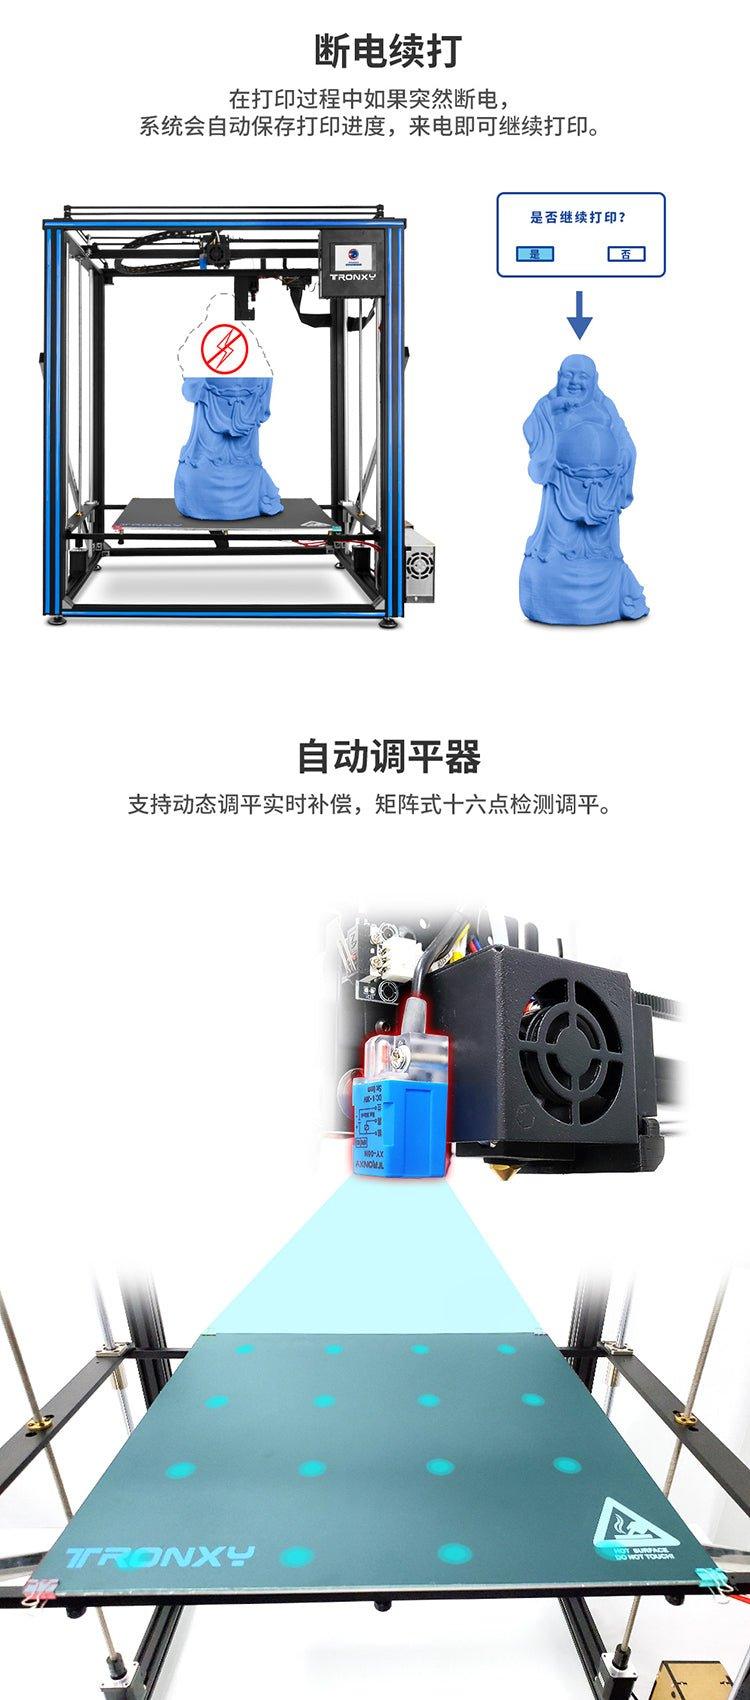 Tronxy X5SA-500 RRO Large 3d printer 500*500*600(mm) big 3d printing machine US EU stock free shipping - Antinsky3d